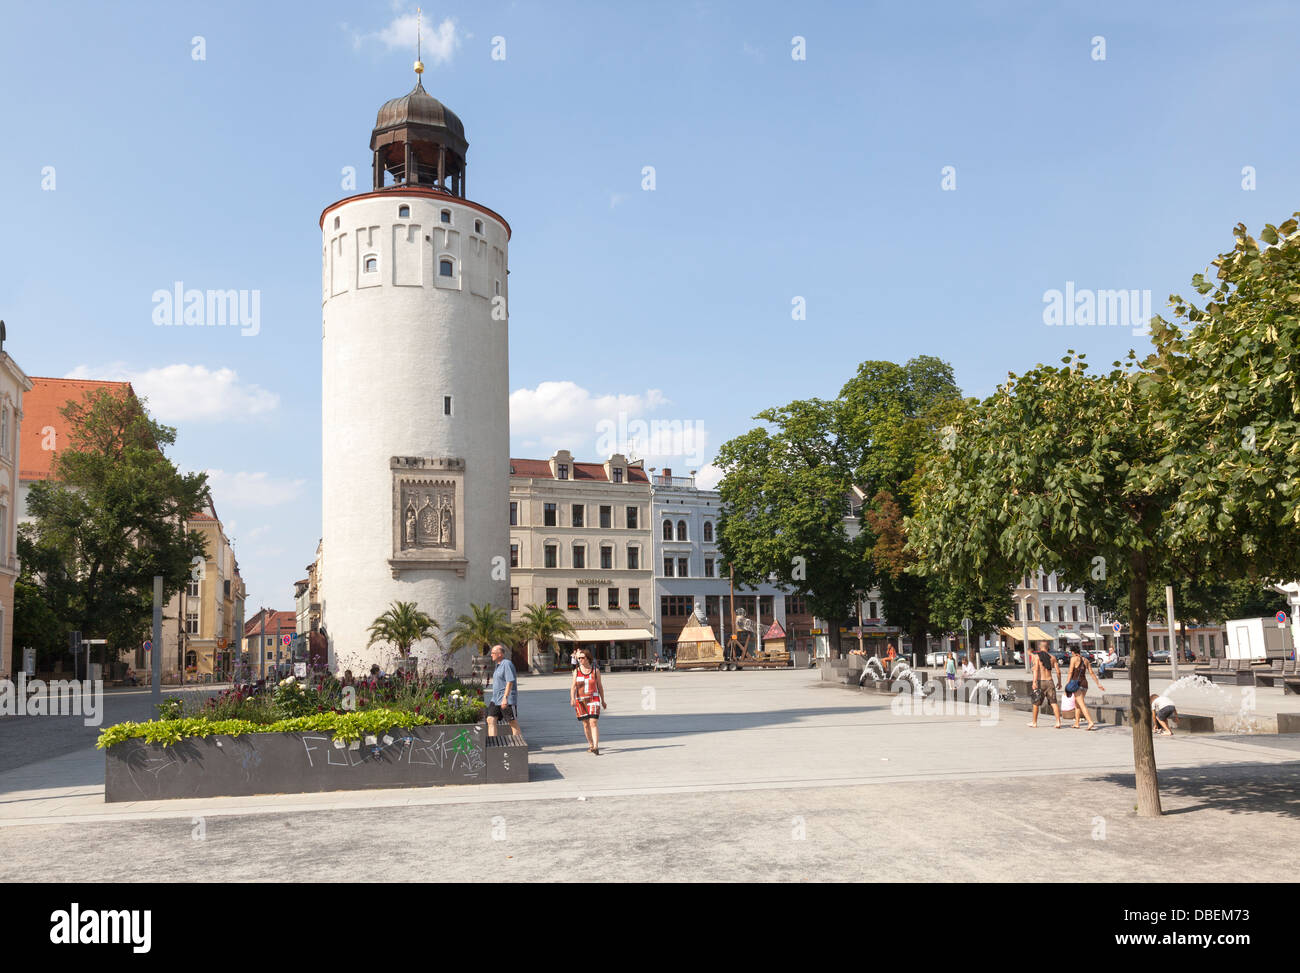 Marienplatz with Frauenturm / Dicke Turm, Goerlitz, Saxony, Germany Stock Photo